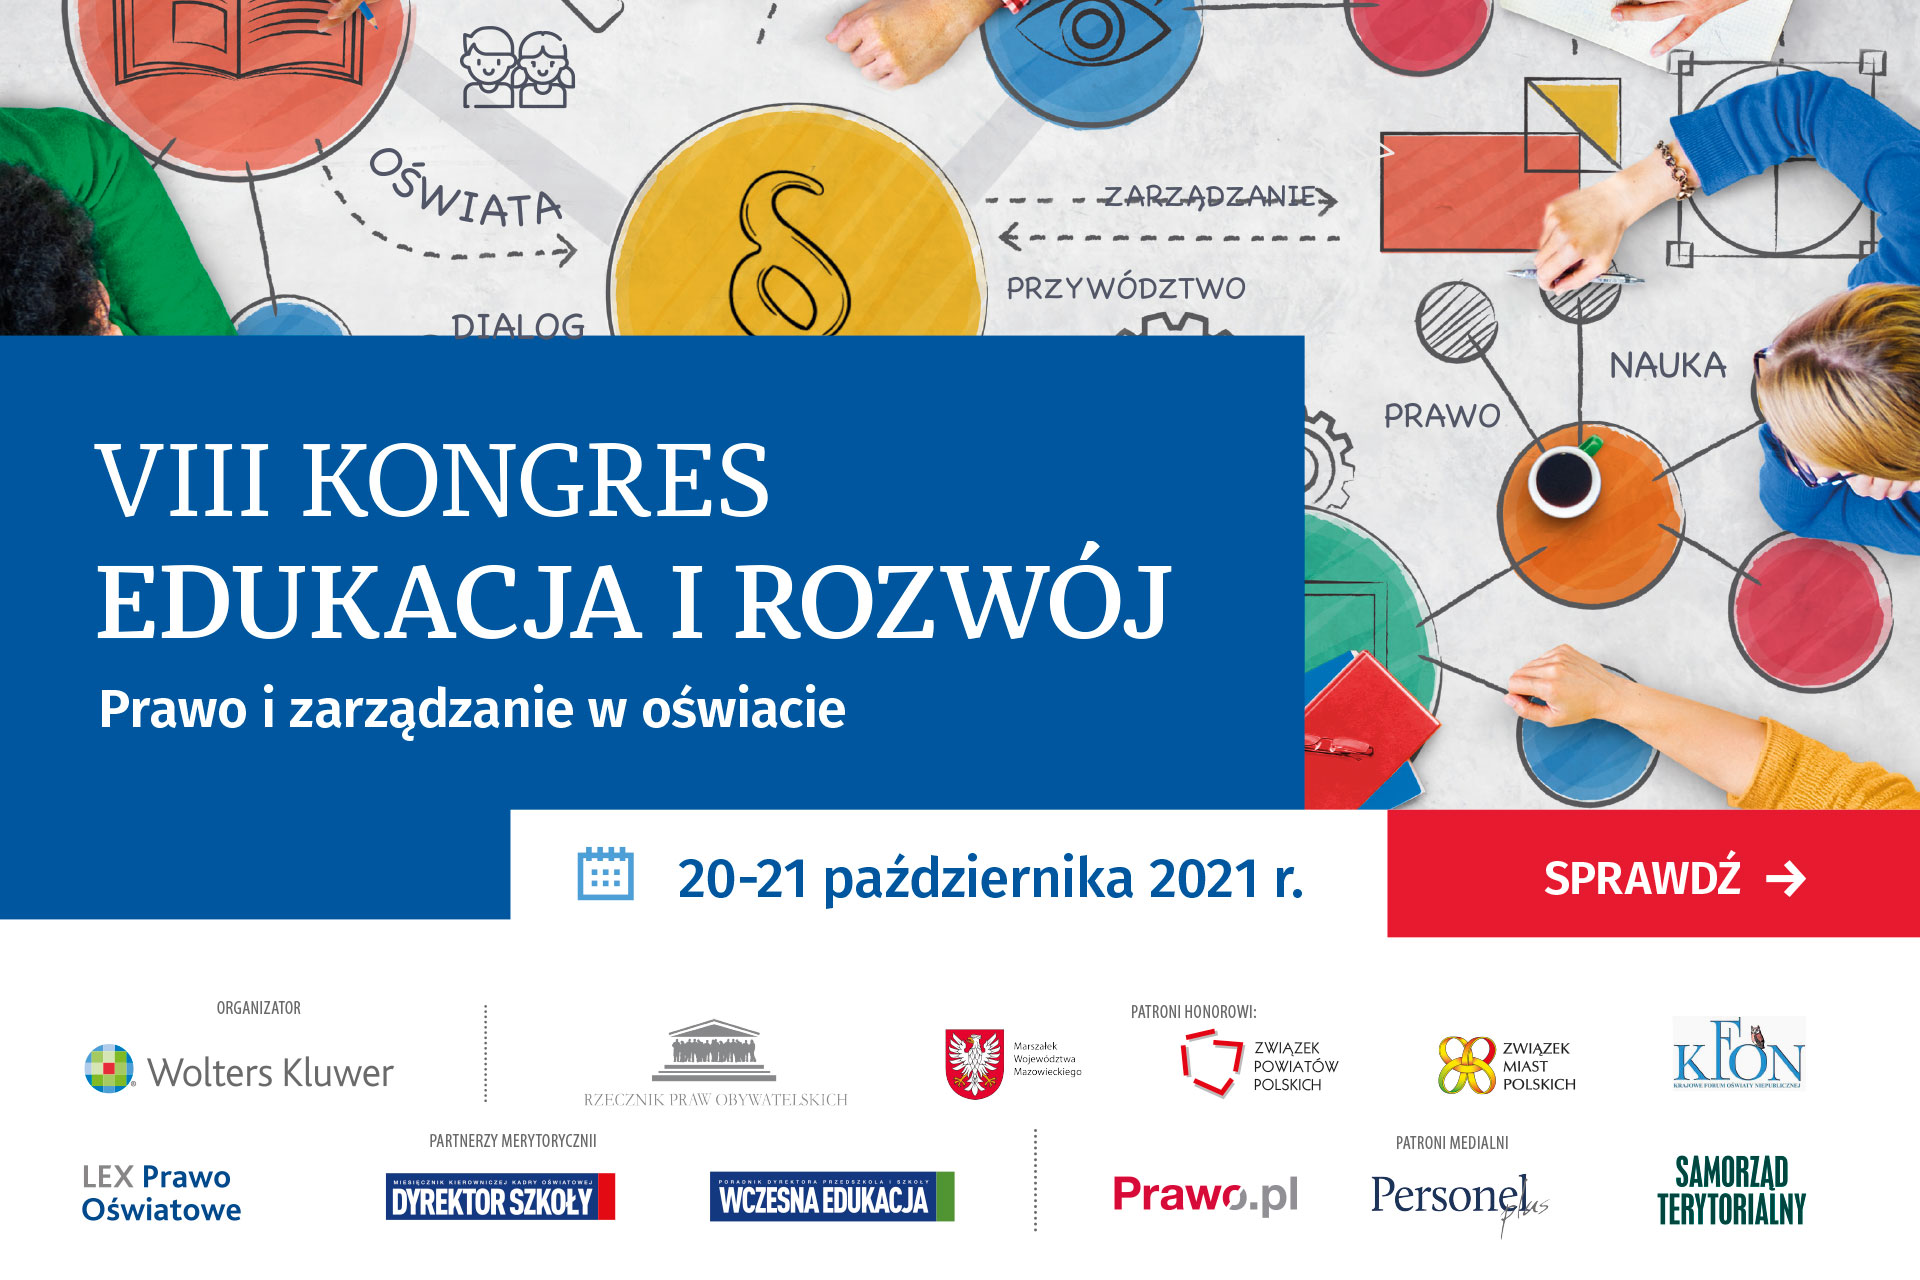 VIII edycja ogólnopolskiego Kongresu Edukacja i Rozwój